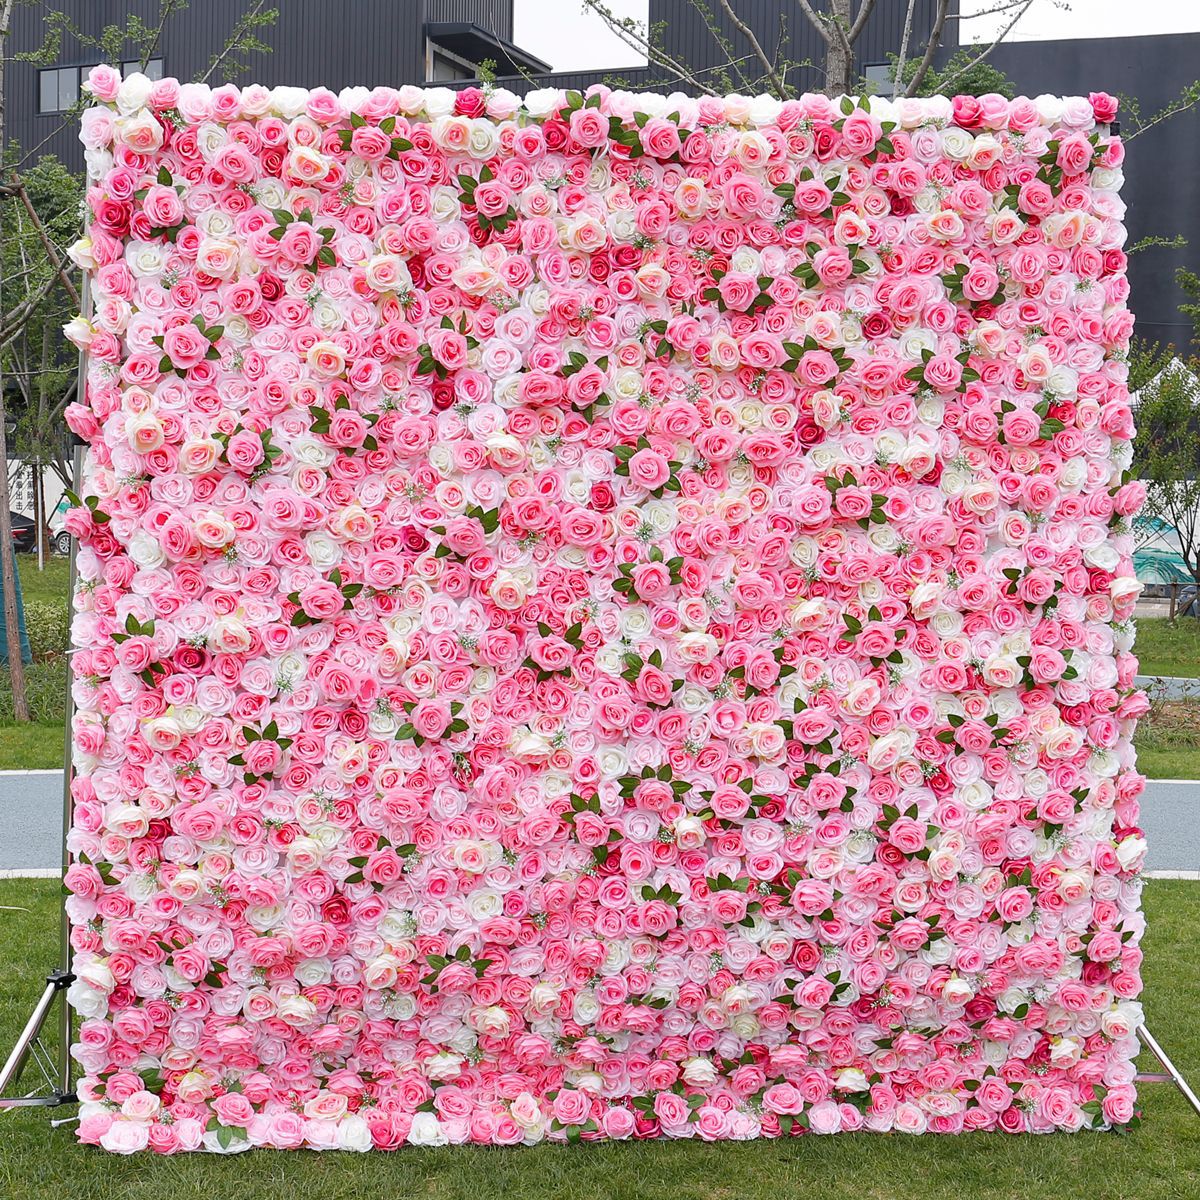 Kain pink ing ngisor simulasi kembang tembok pernikahan kembang mawar